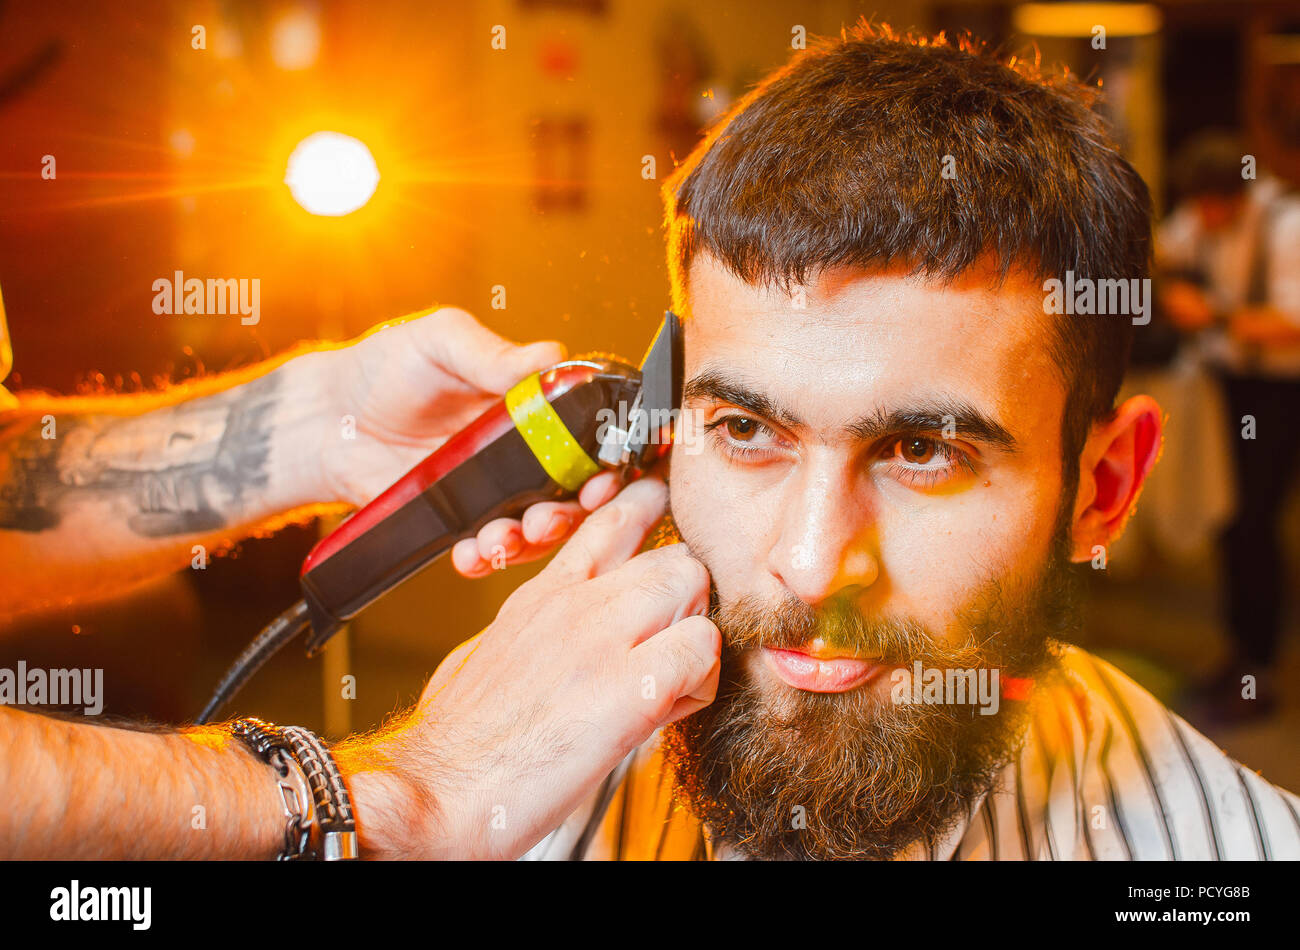 Friseur hat einen Haarschnitt auf seinem Kopf mit einem Langhaarschneider  auf ein junger hübscher Kerl mit einem Schnurrbart und Bart. Herren  Friseursalon Stockfotografie - Alamy